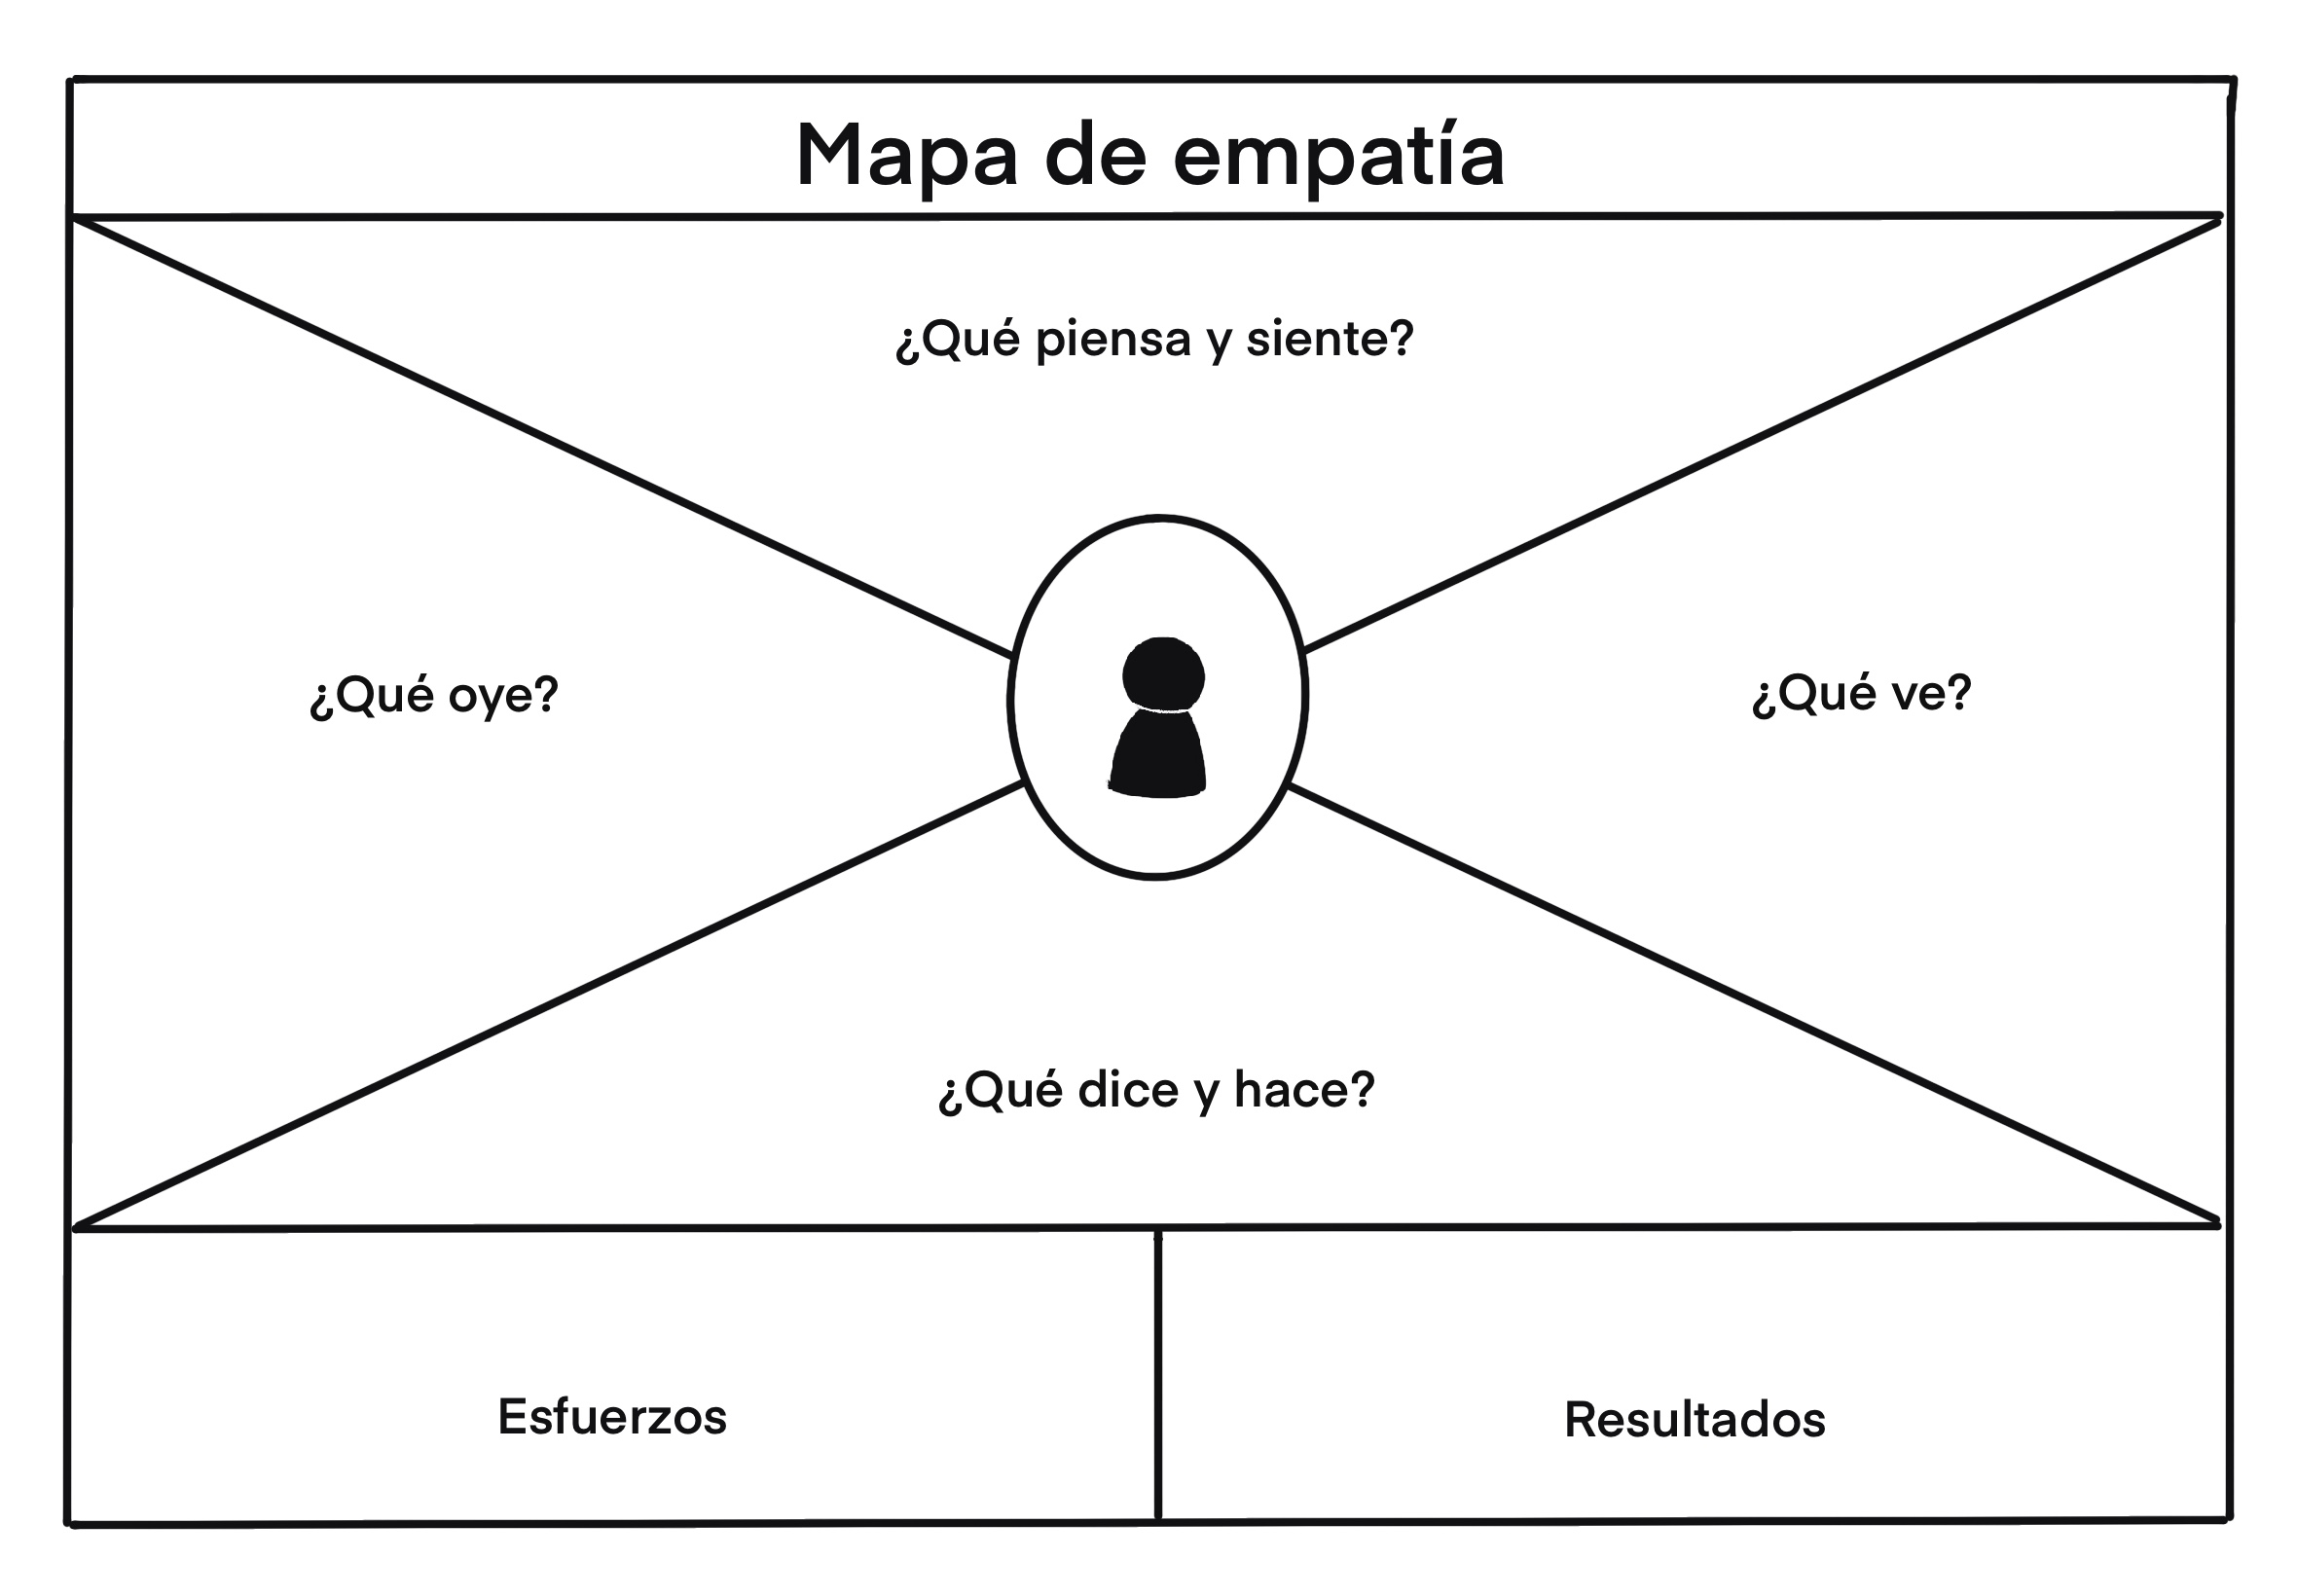 Imagen de una matriz para elaborar el mapa de empatía.